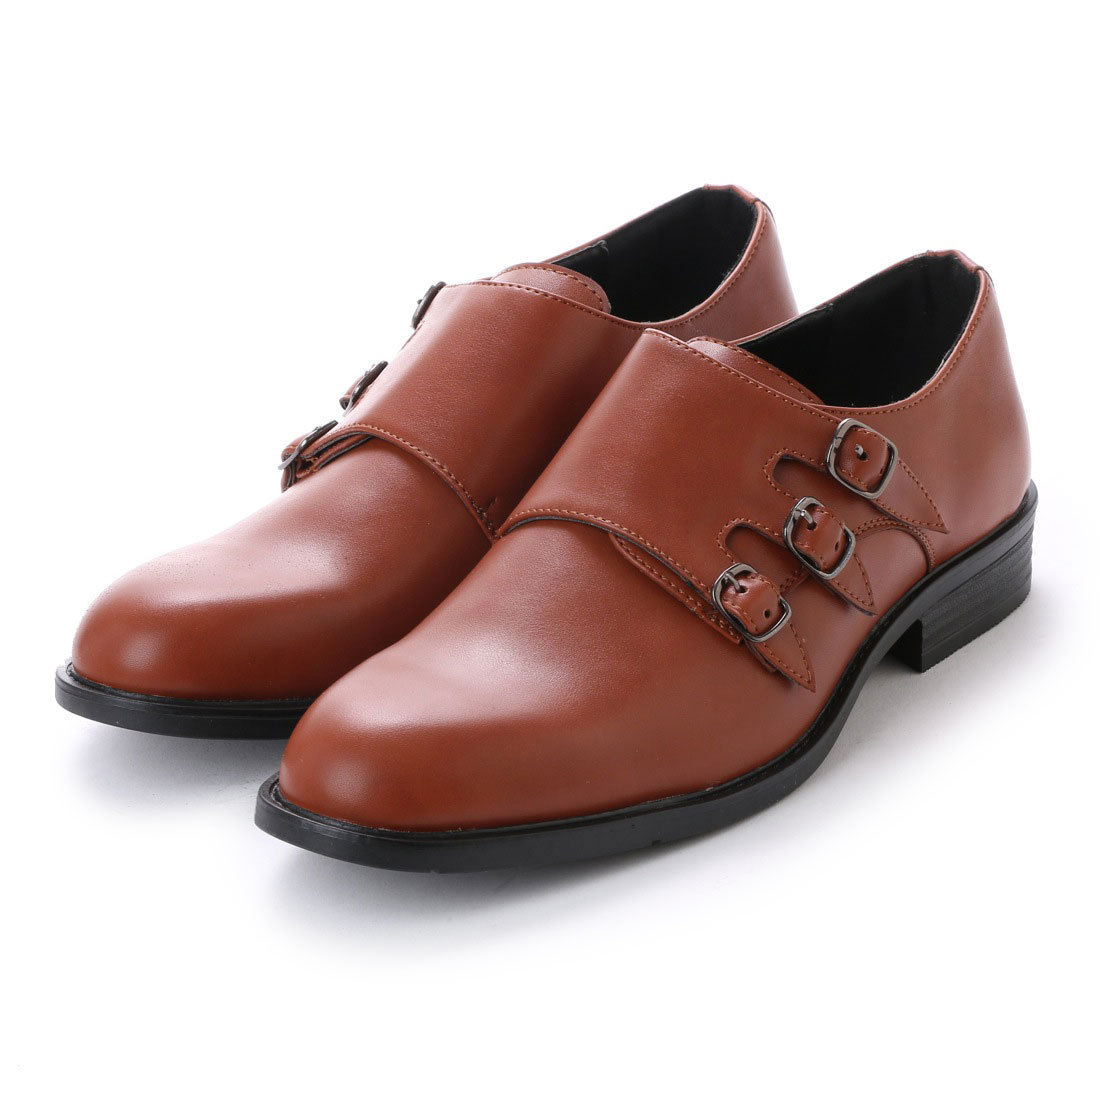 16124 アウトレット ビジネスシューズ 26.5cm ブラウン モンクストラップ メンズ 紳士靴